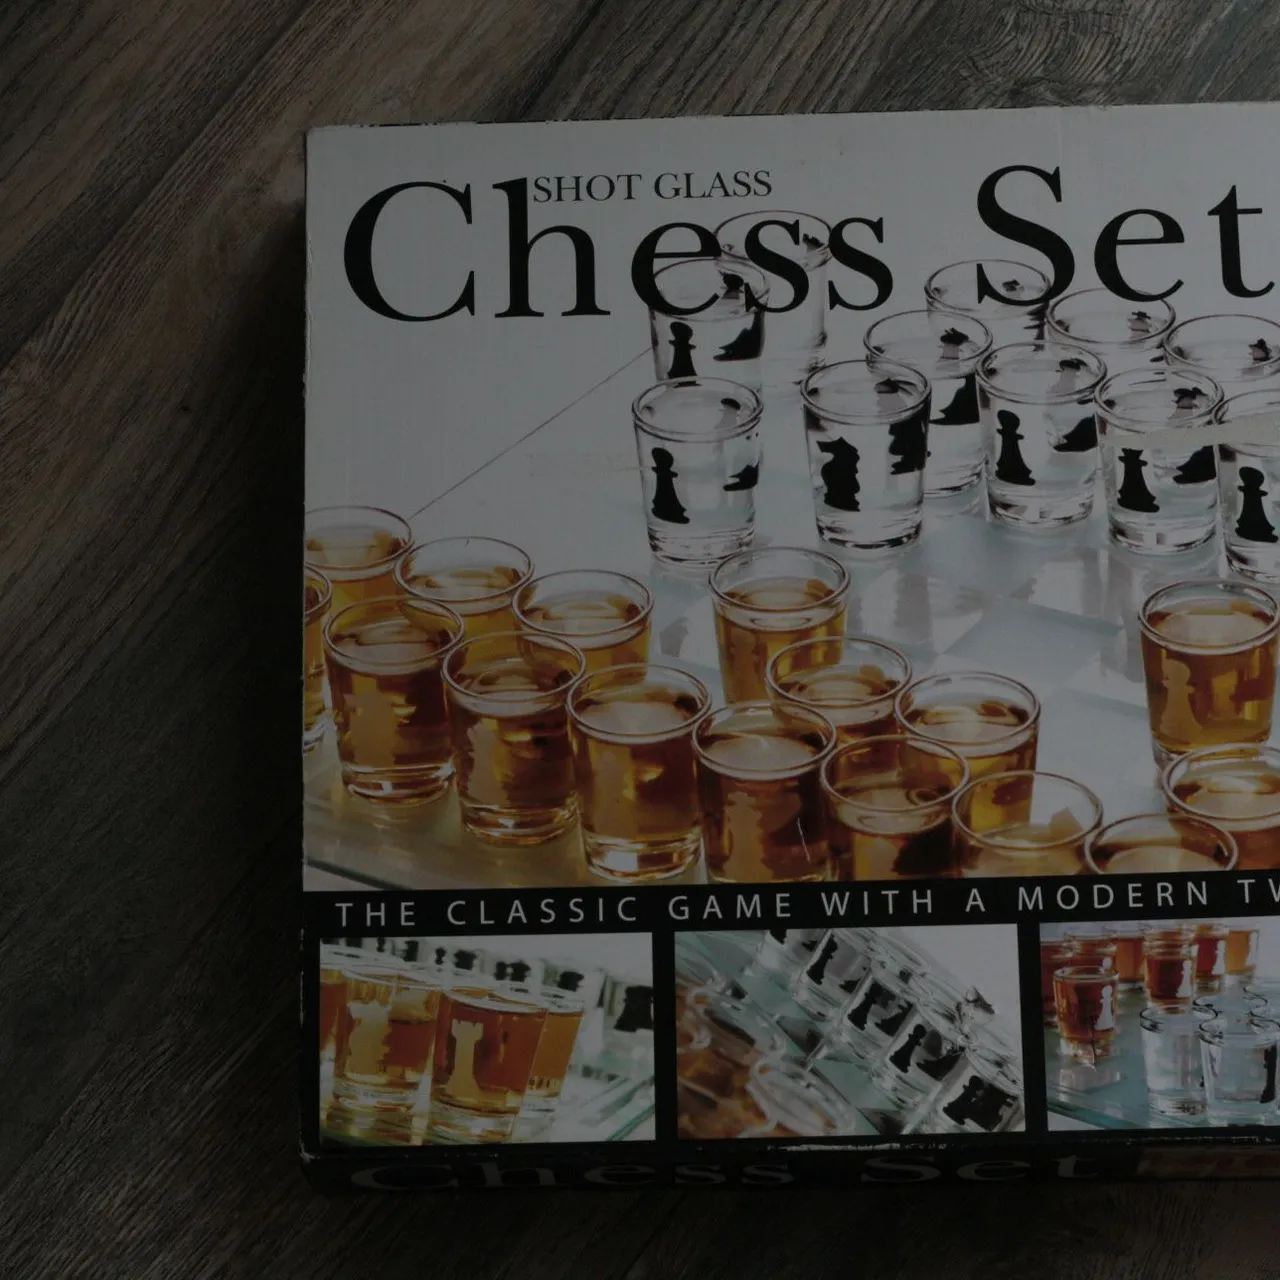 Shot Glass Chess Set photo 1